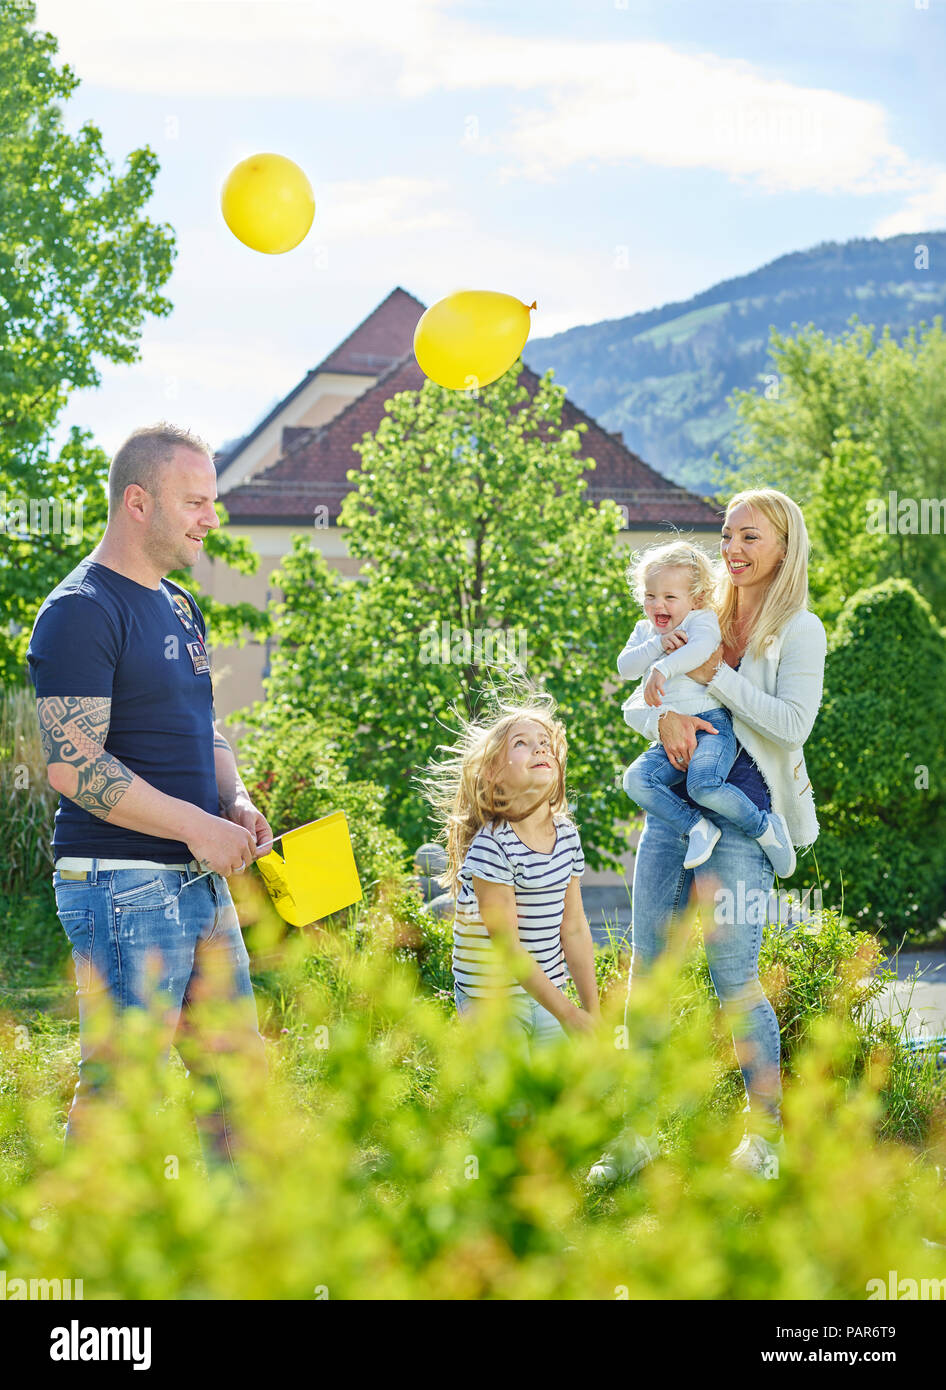 Austria, Wattens, famiglia felice giocando insieme in un parco Foto Stock